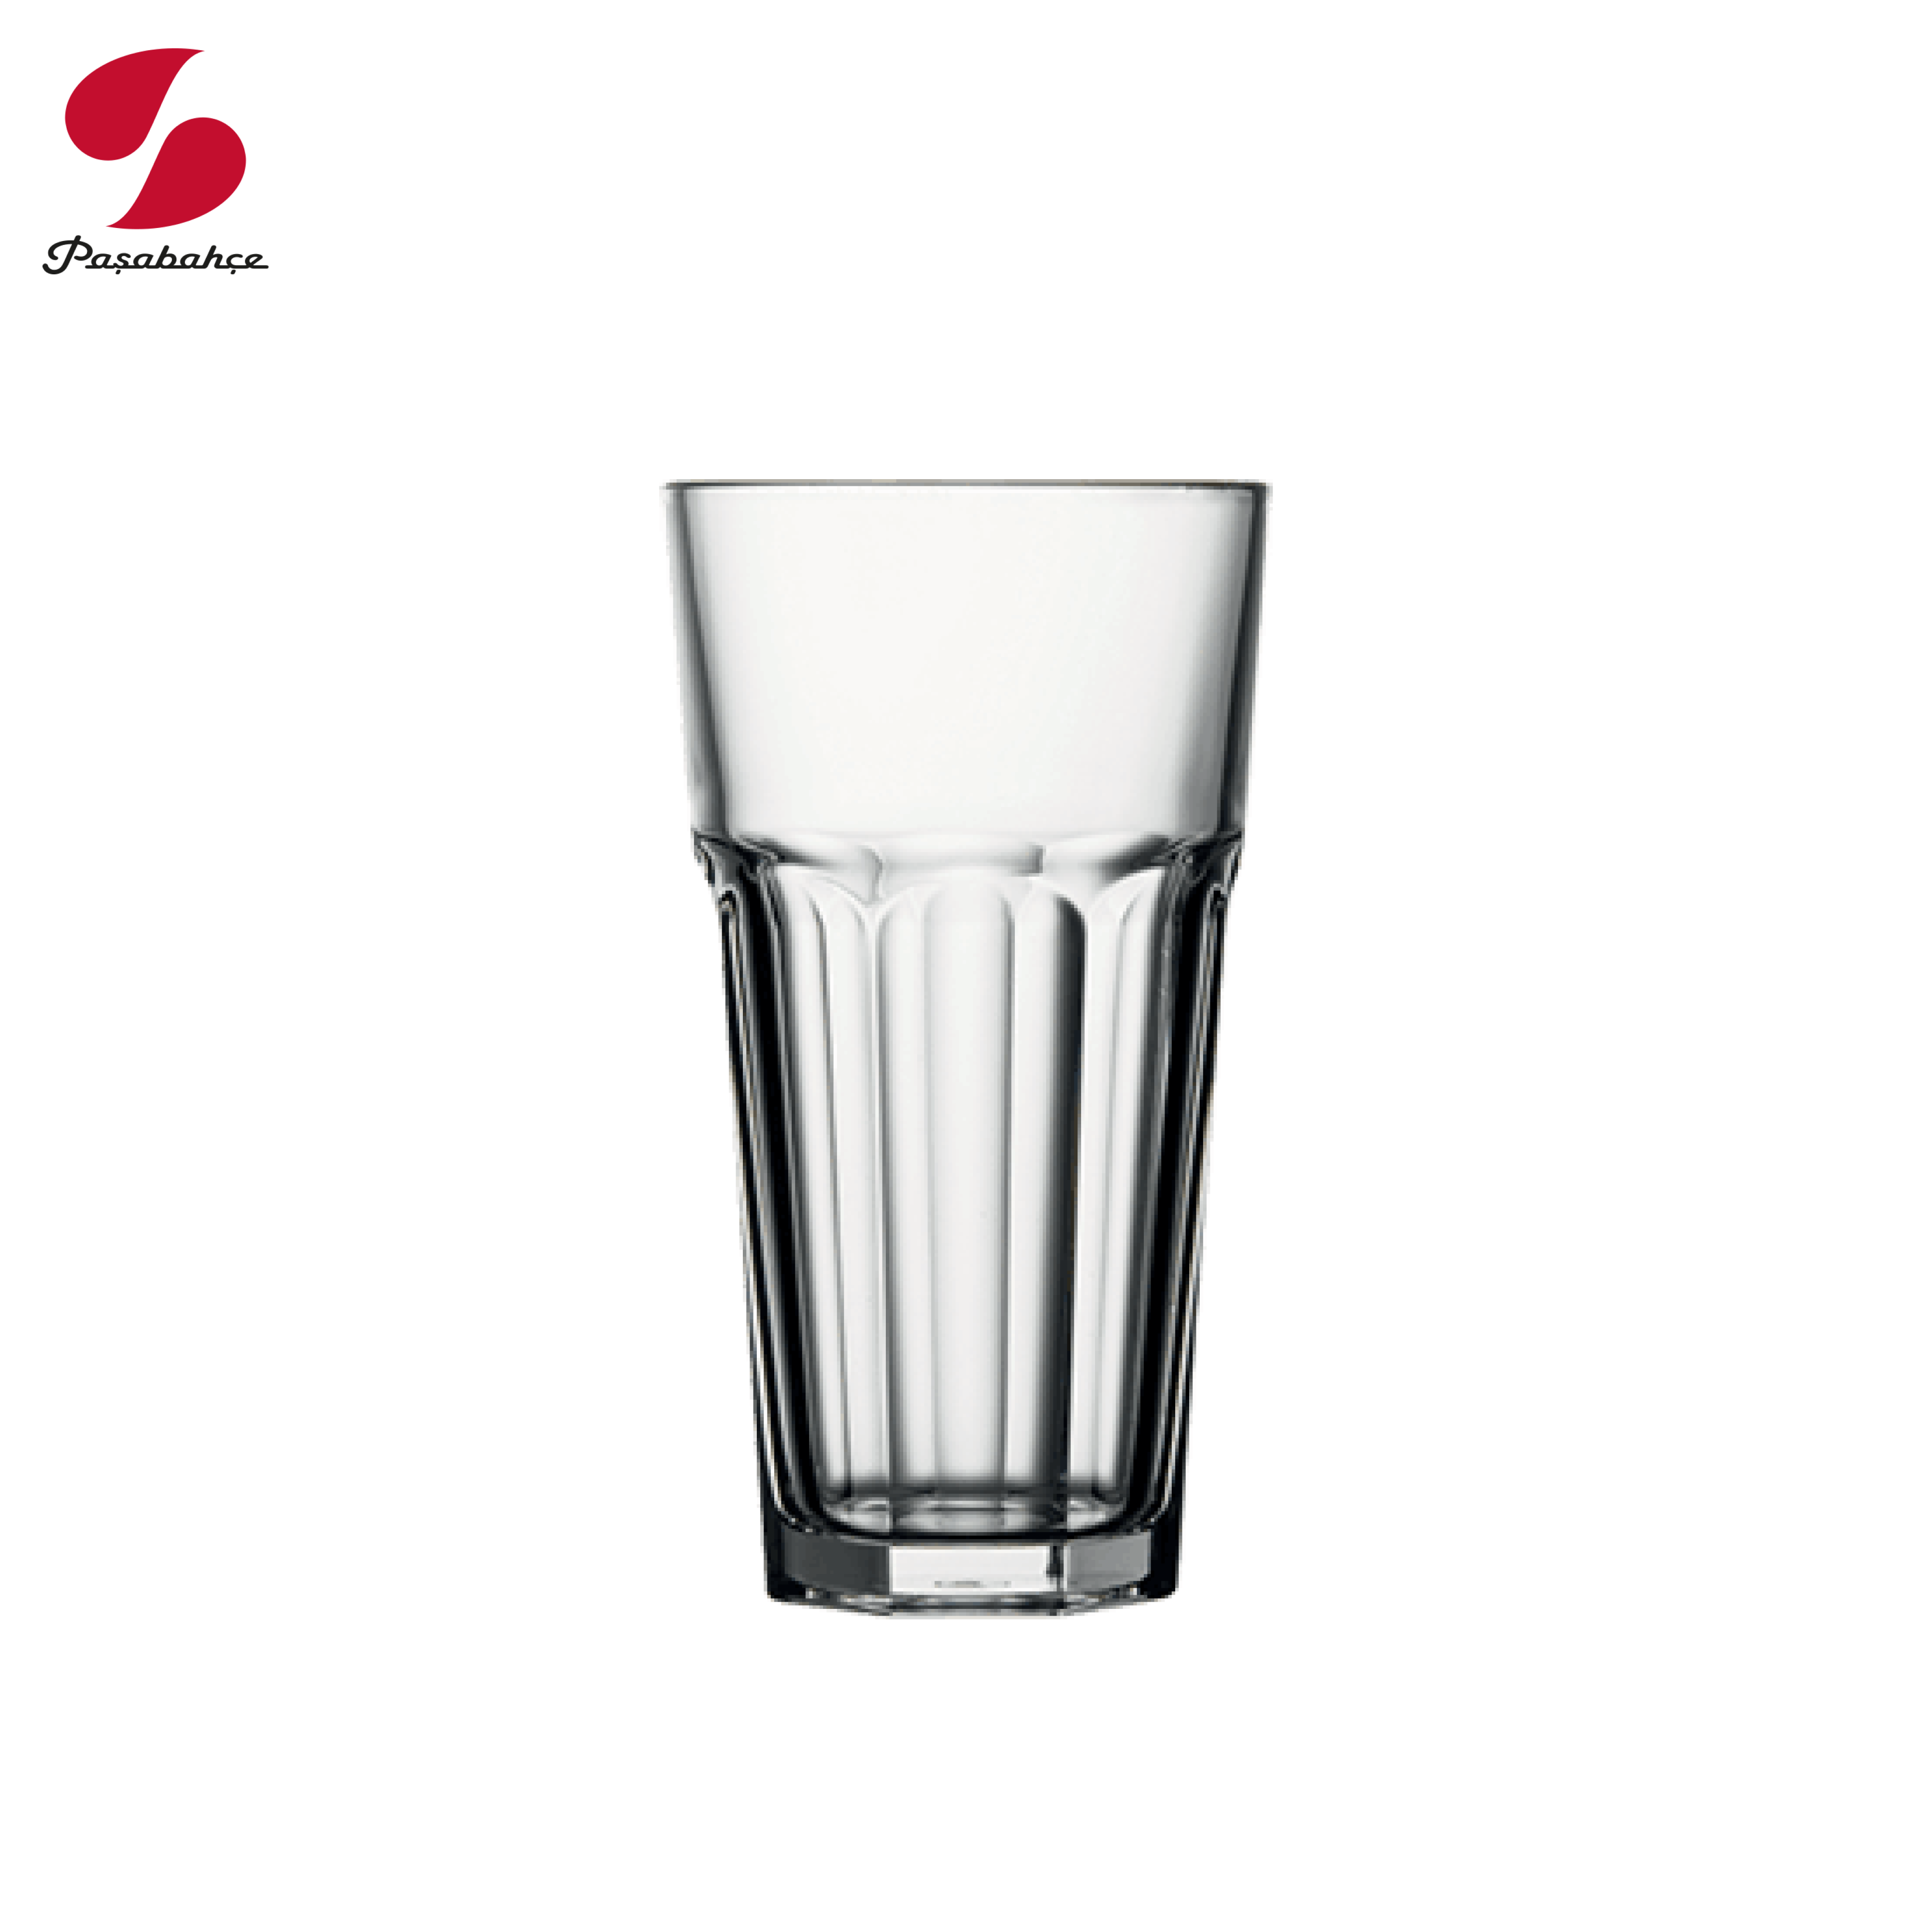 Gotë qelqi për lëngje Casablanca (12 copë), 285 mL